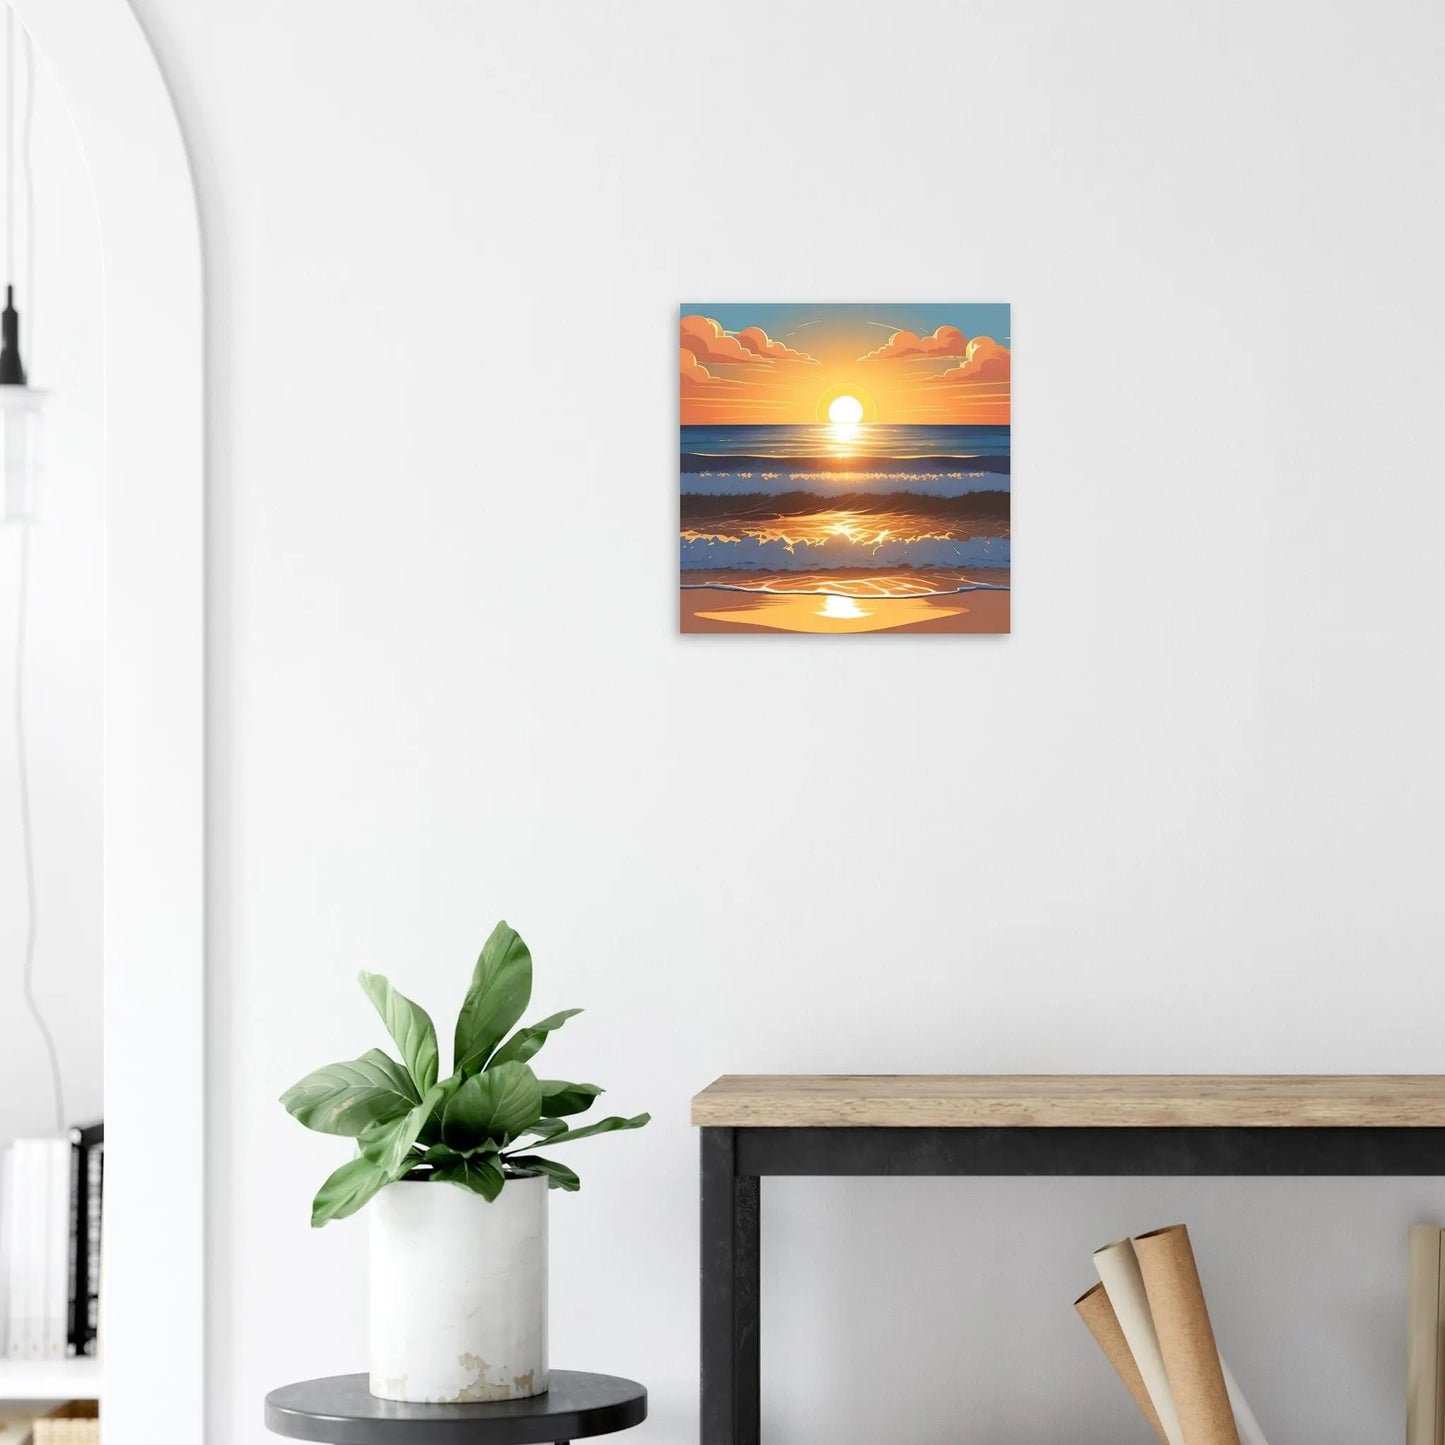 Moderner Forex-Druck - Abendsonne am Meer - Digitaler Stil, KI-Kunst - RolConArt, Landschaften, 40x40-cm-16x16-Weiß